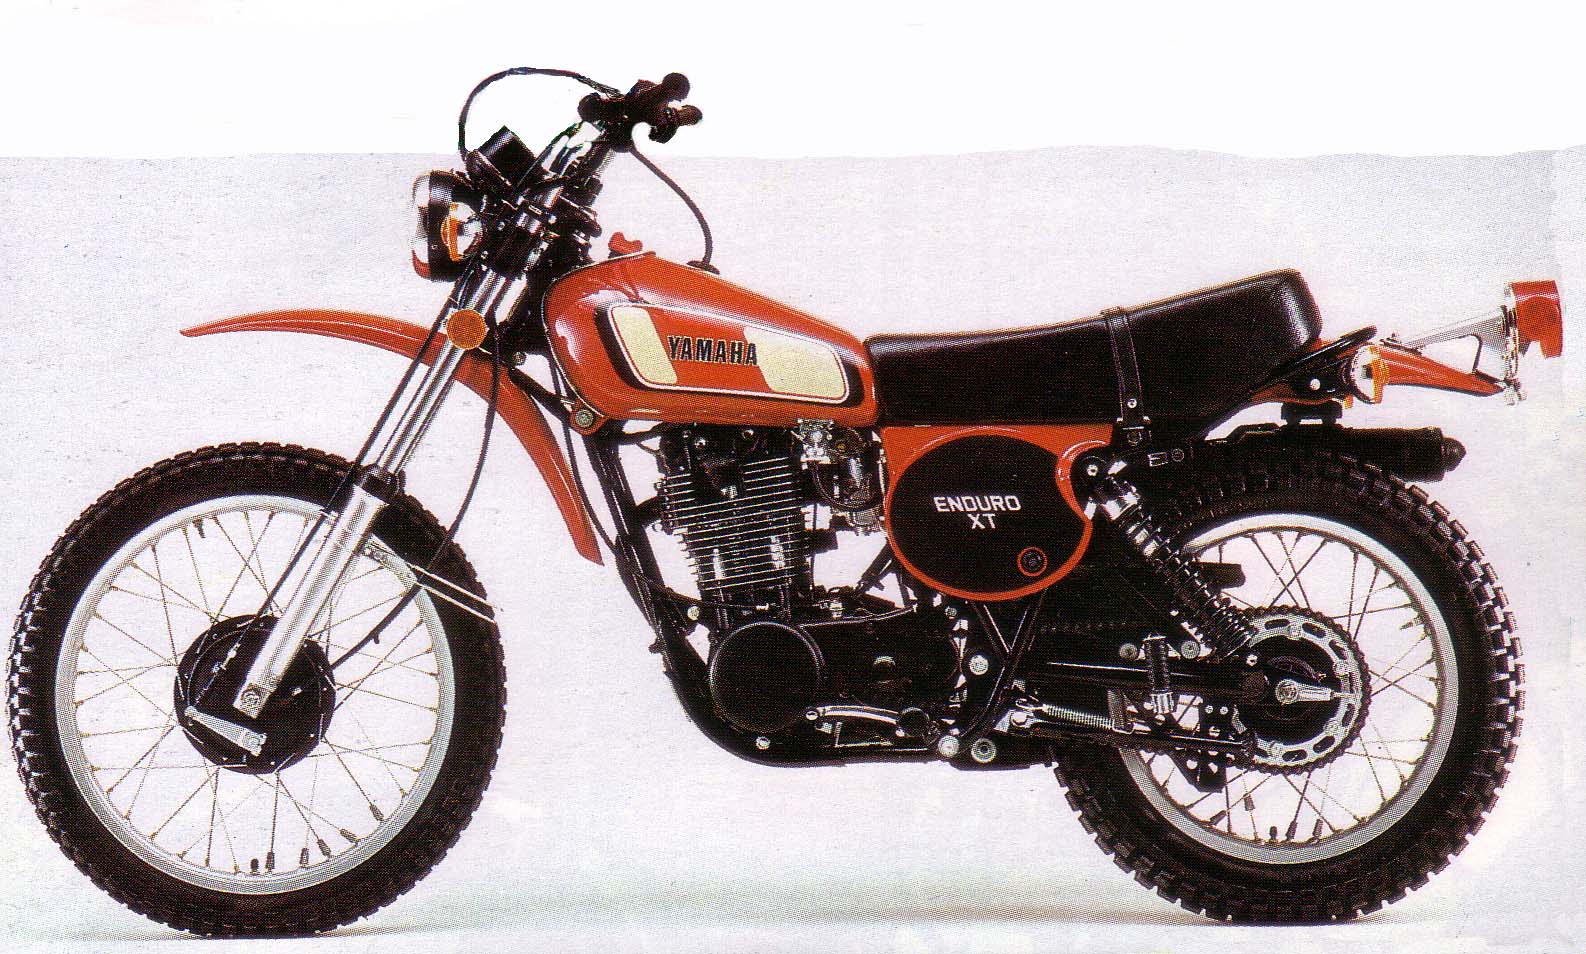 ヤマハ XT500 / YAMAHA XT500: 70年代のオートバイ